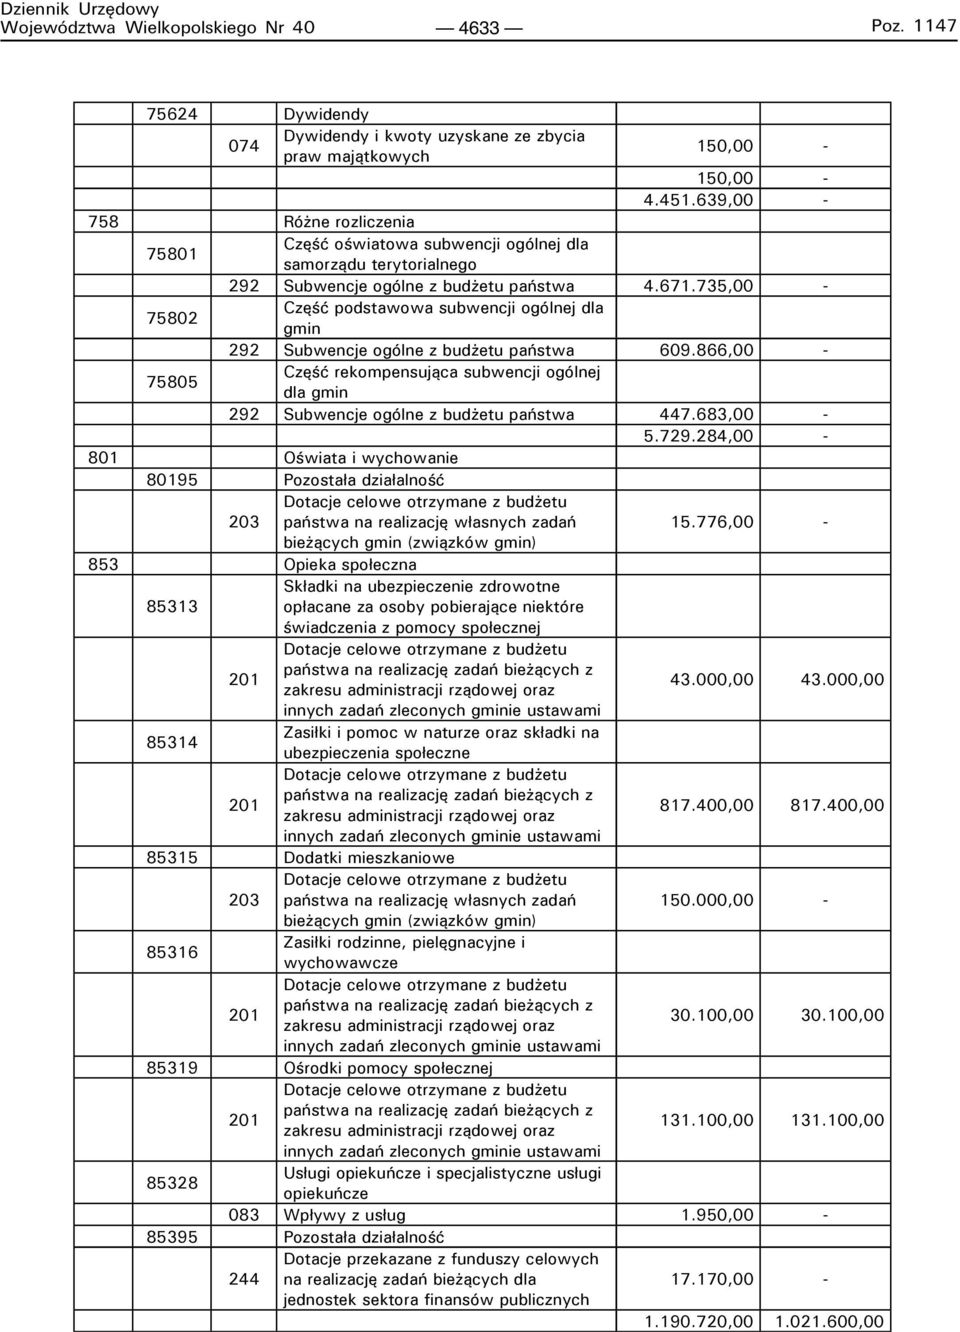 735,00-75802 Część podstawowa subwencji ogólnej dla gmin 292 Subwencje ogólne z budżetu państwa 609.